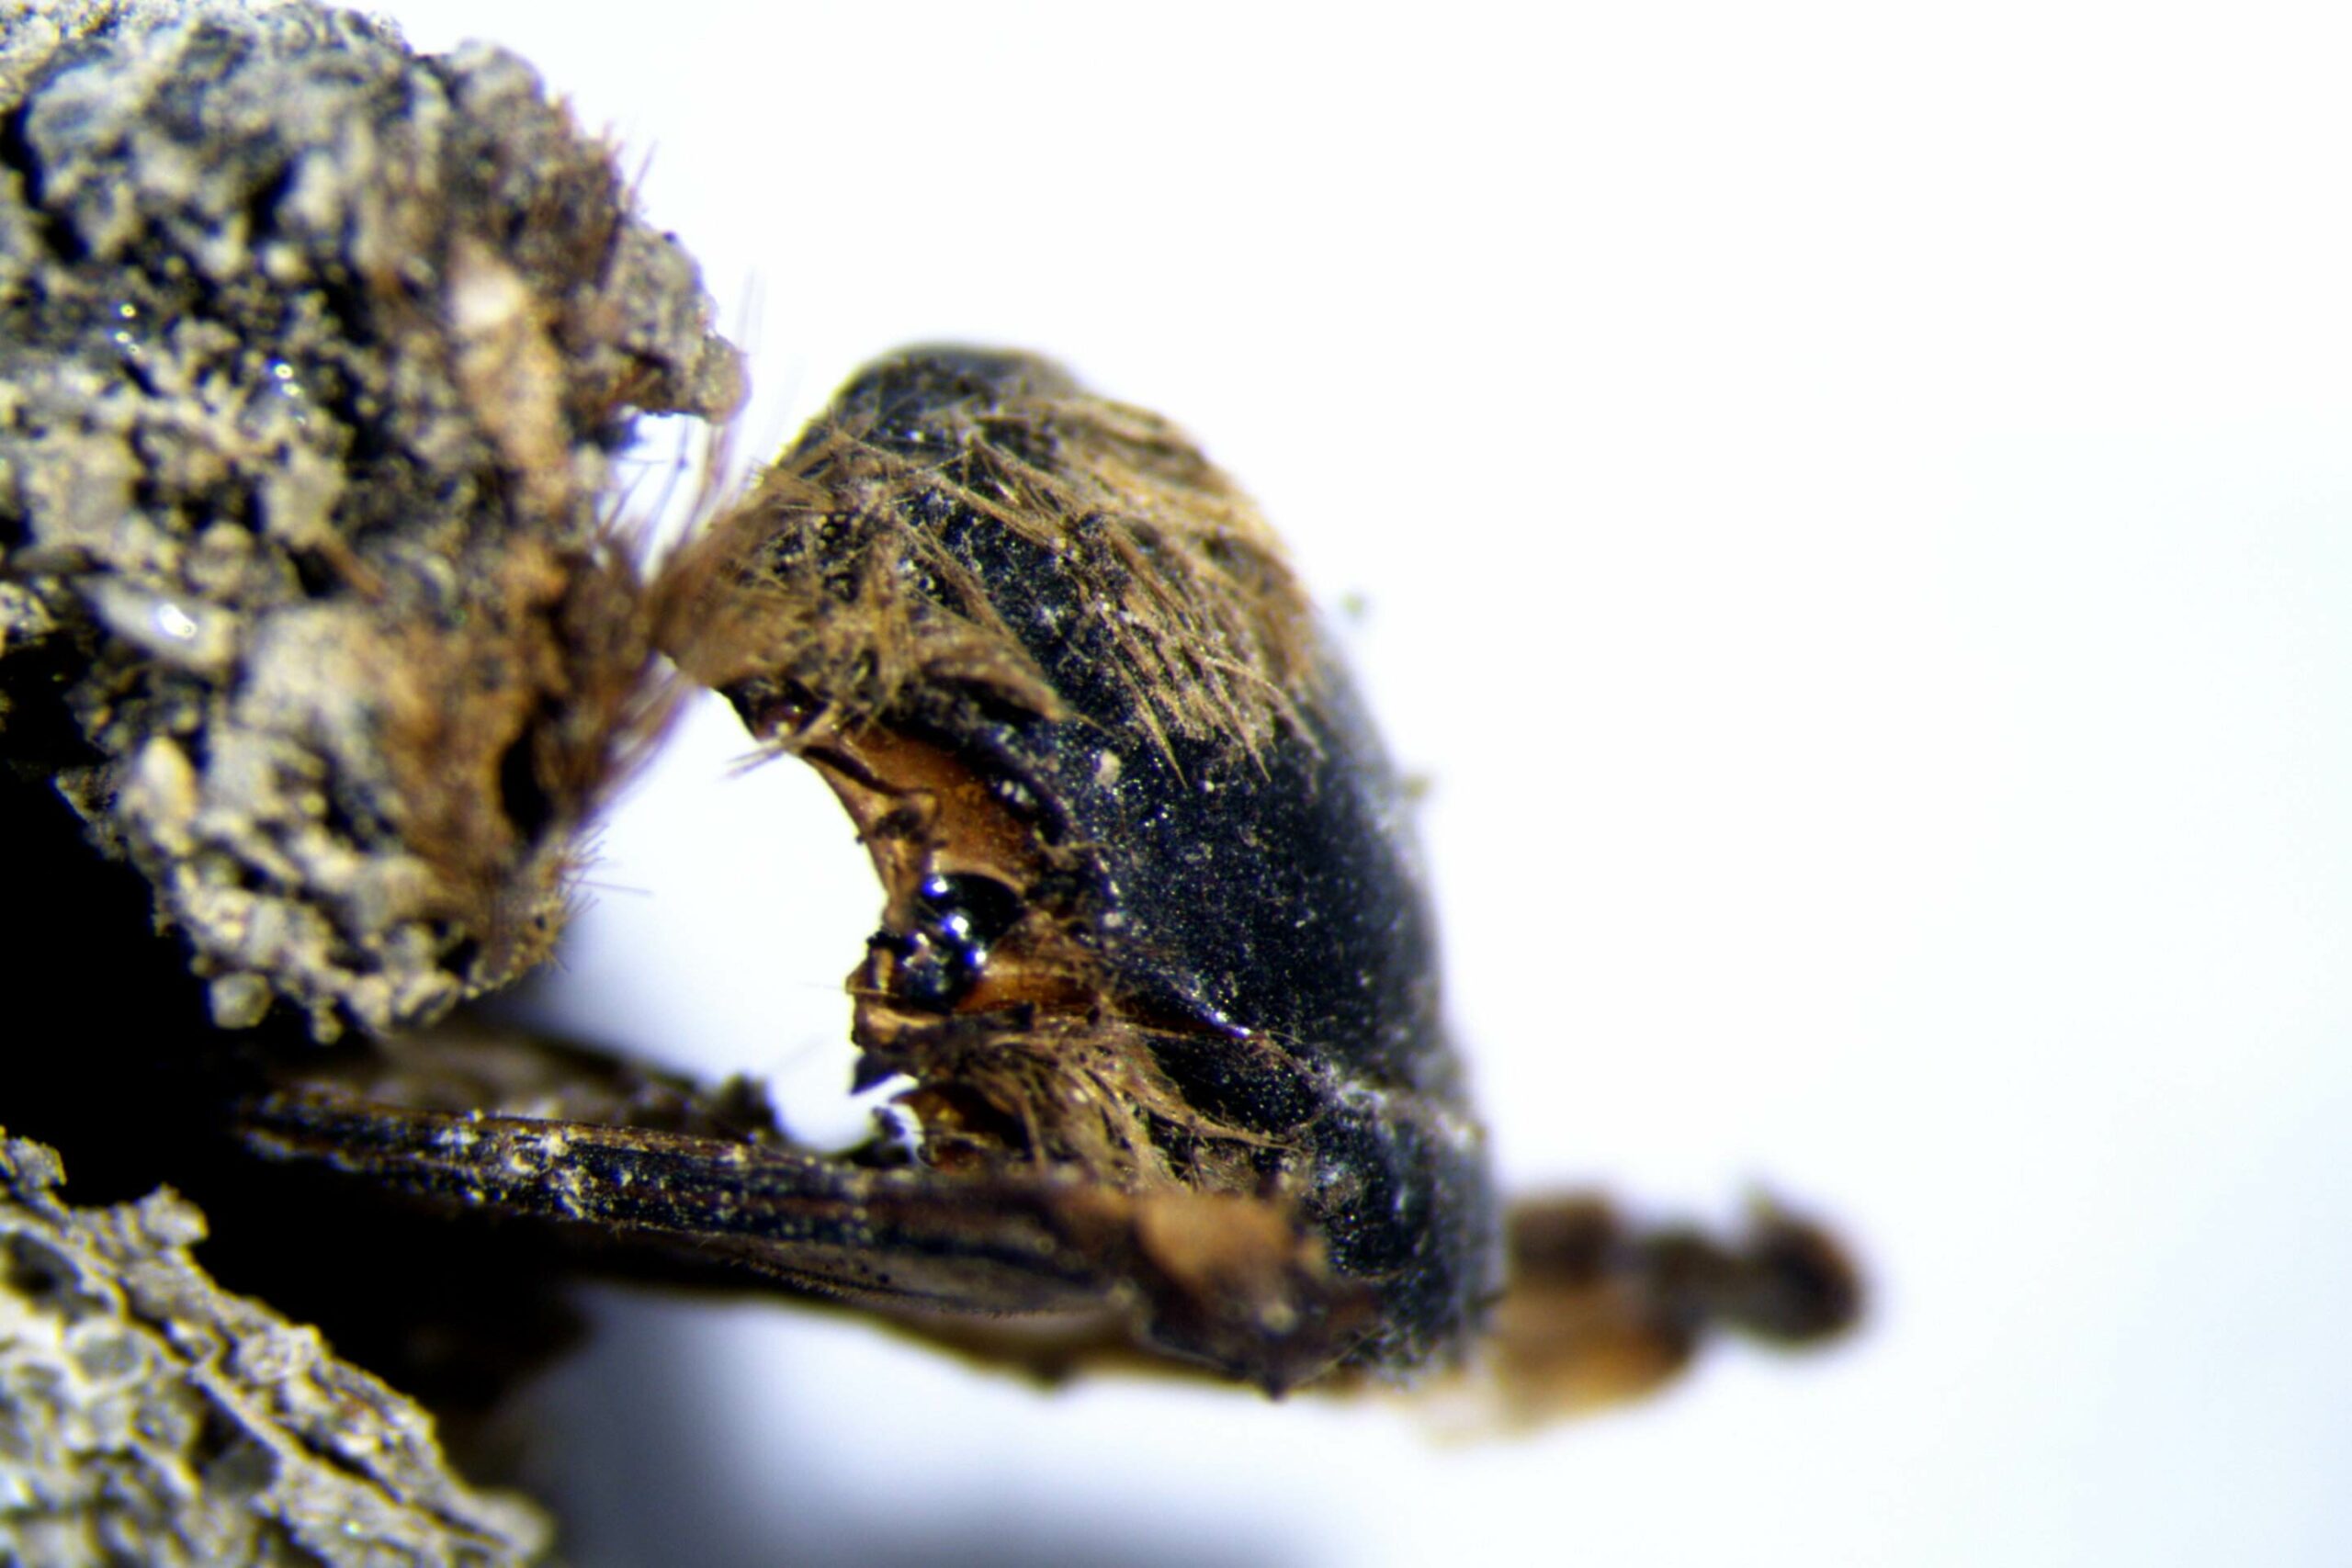 تم العثور على مئات من النحل المحنط داخل شرانقه على الساحل الجنوبي الغربي للبرتغال، في موقع حفريات جديد على ساحل أوديميرا.